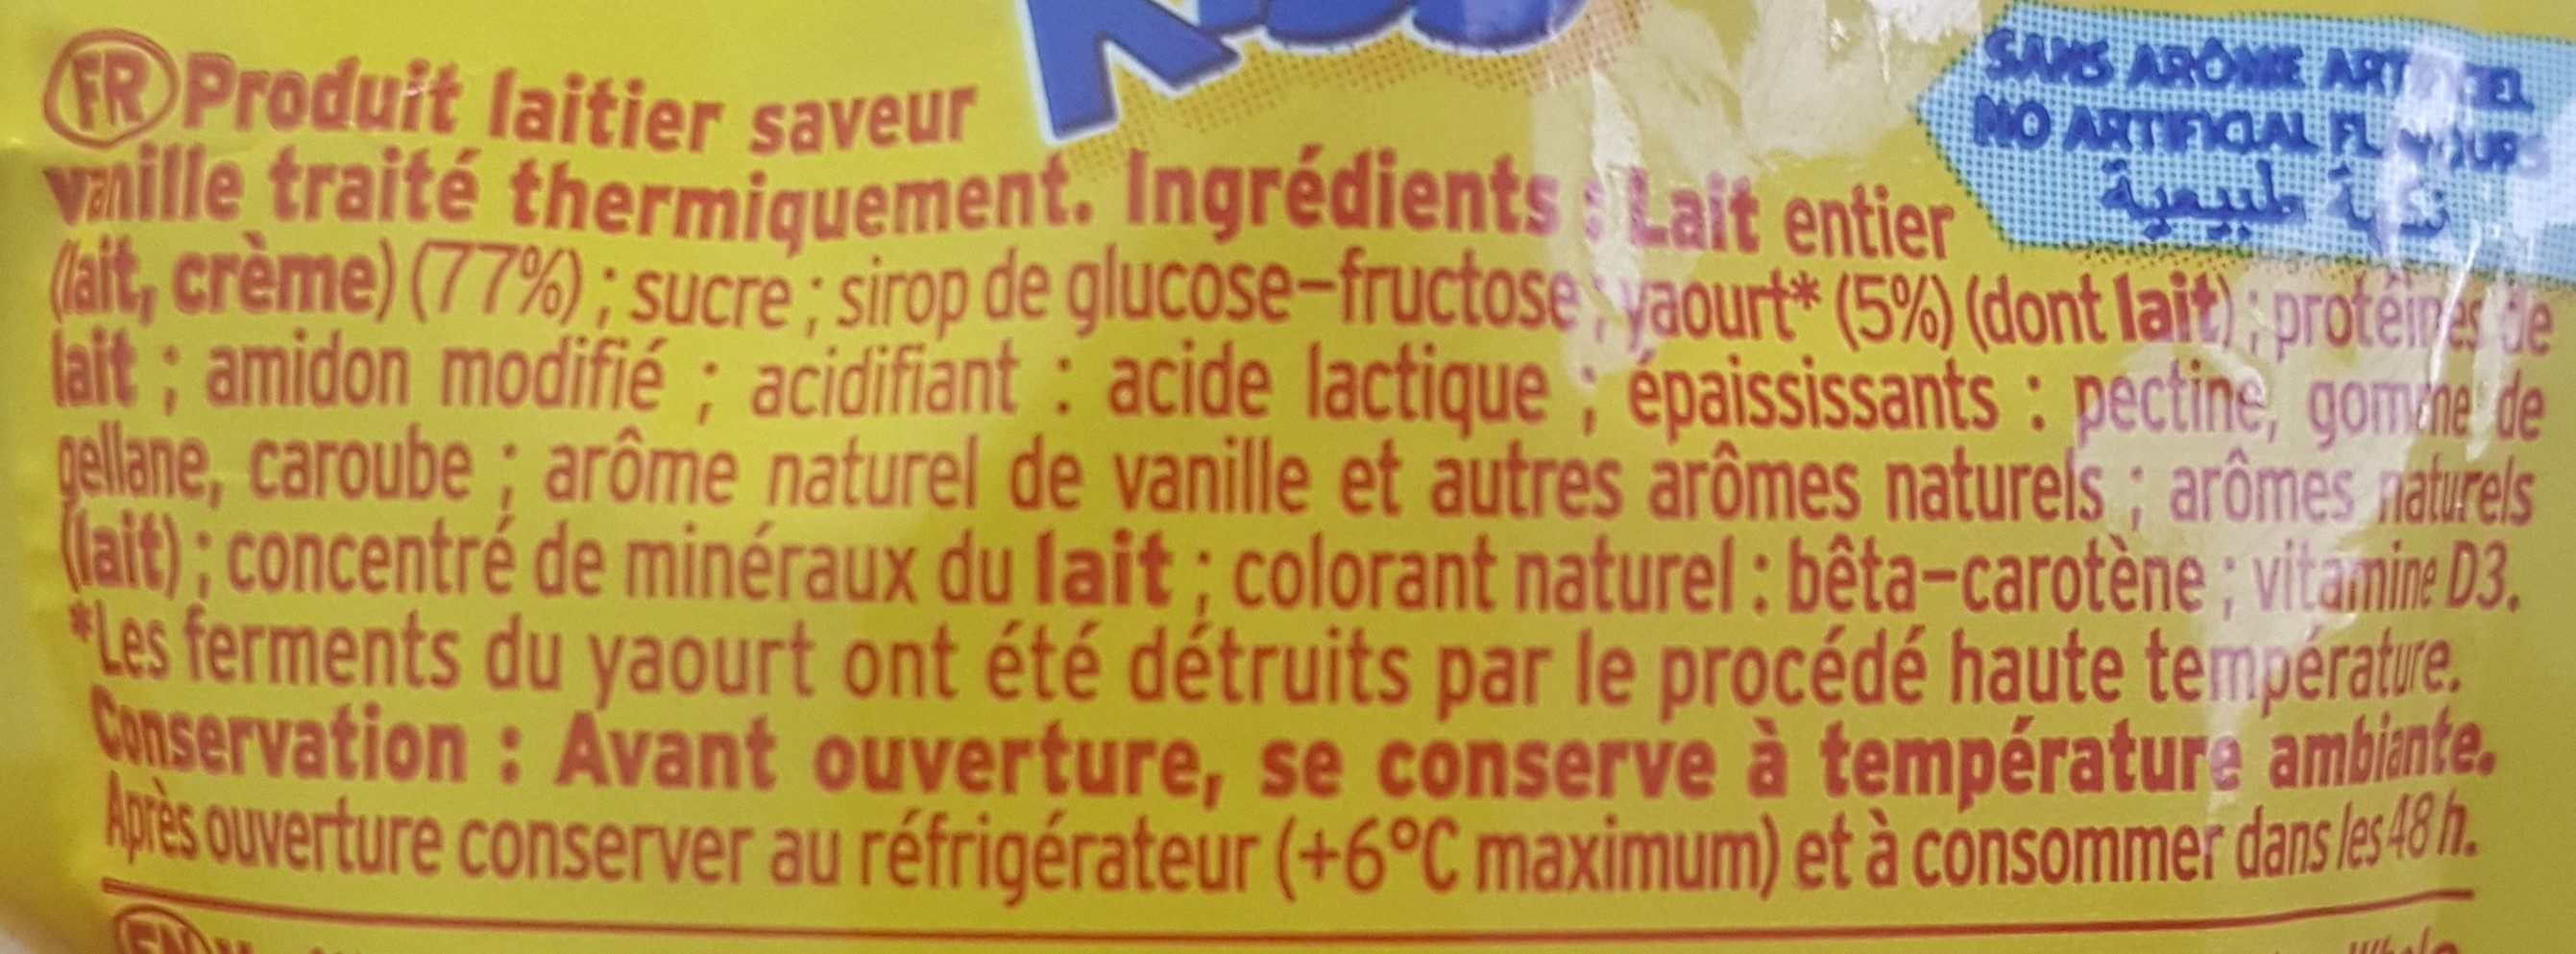 Milk kiss - Ingredients - fr